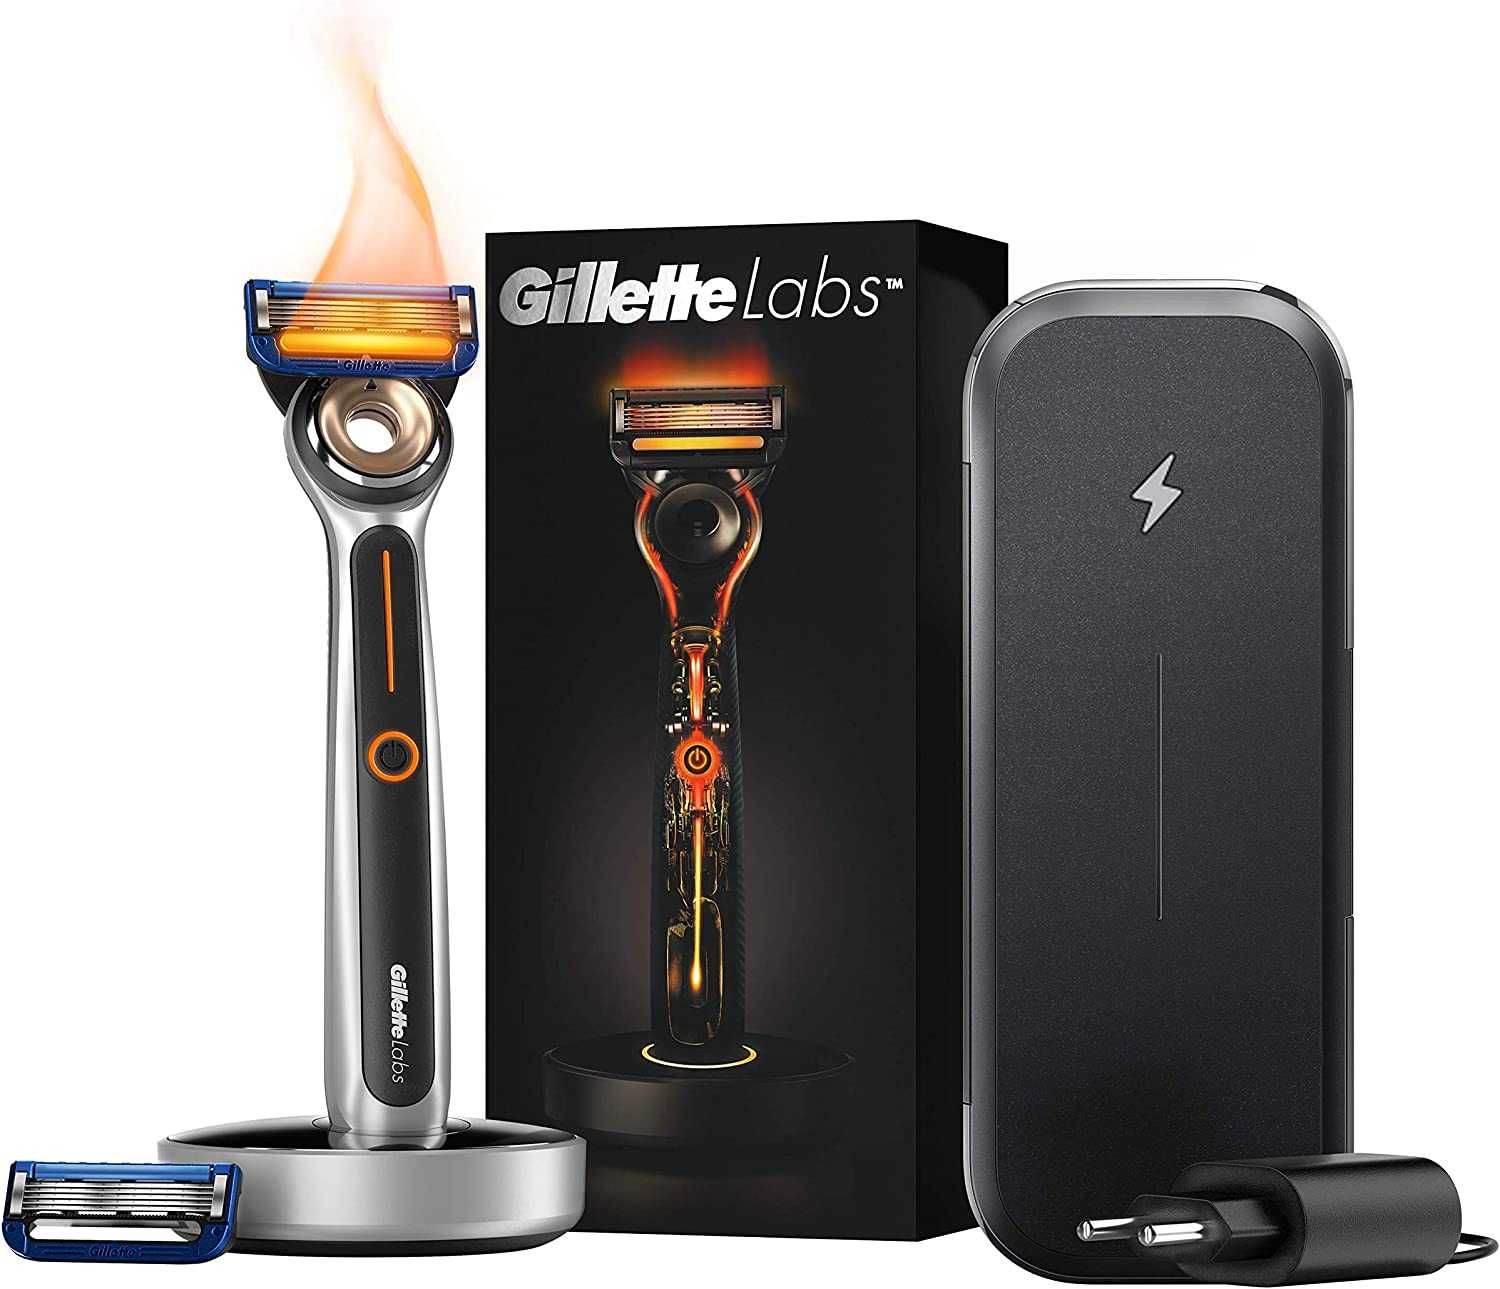 Gillette Labs Podgrzewana Maszynka Do Golenia